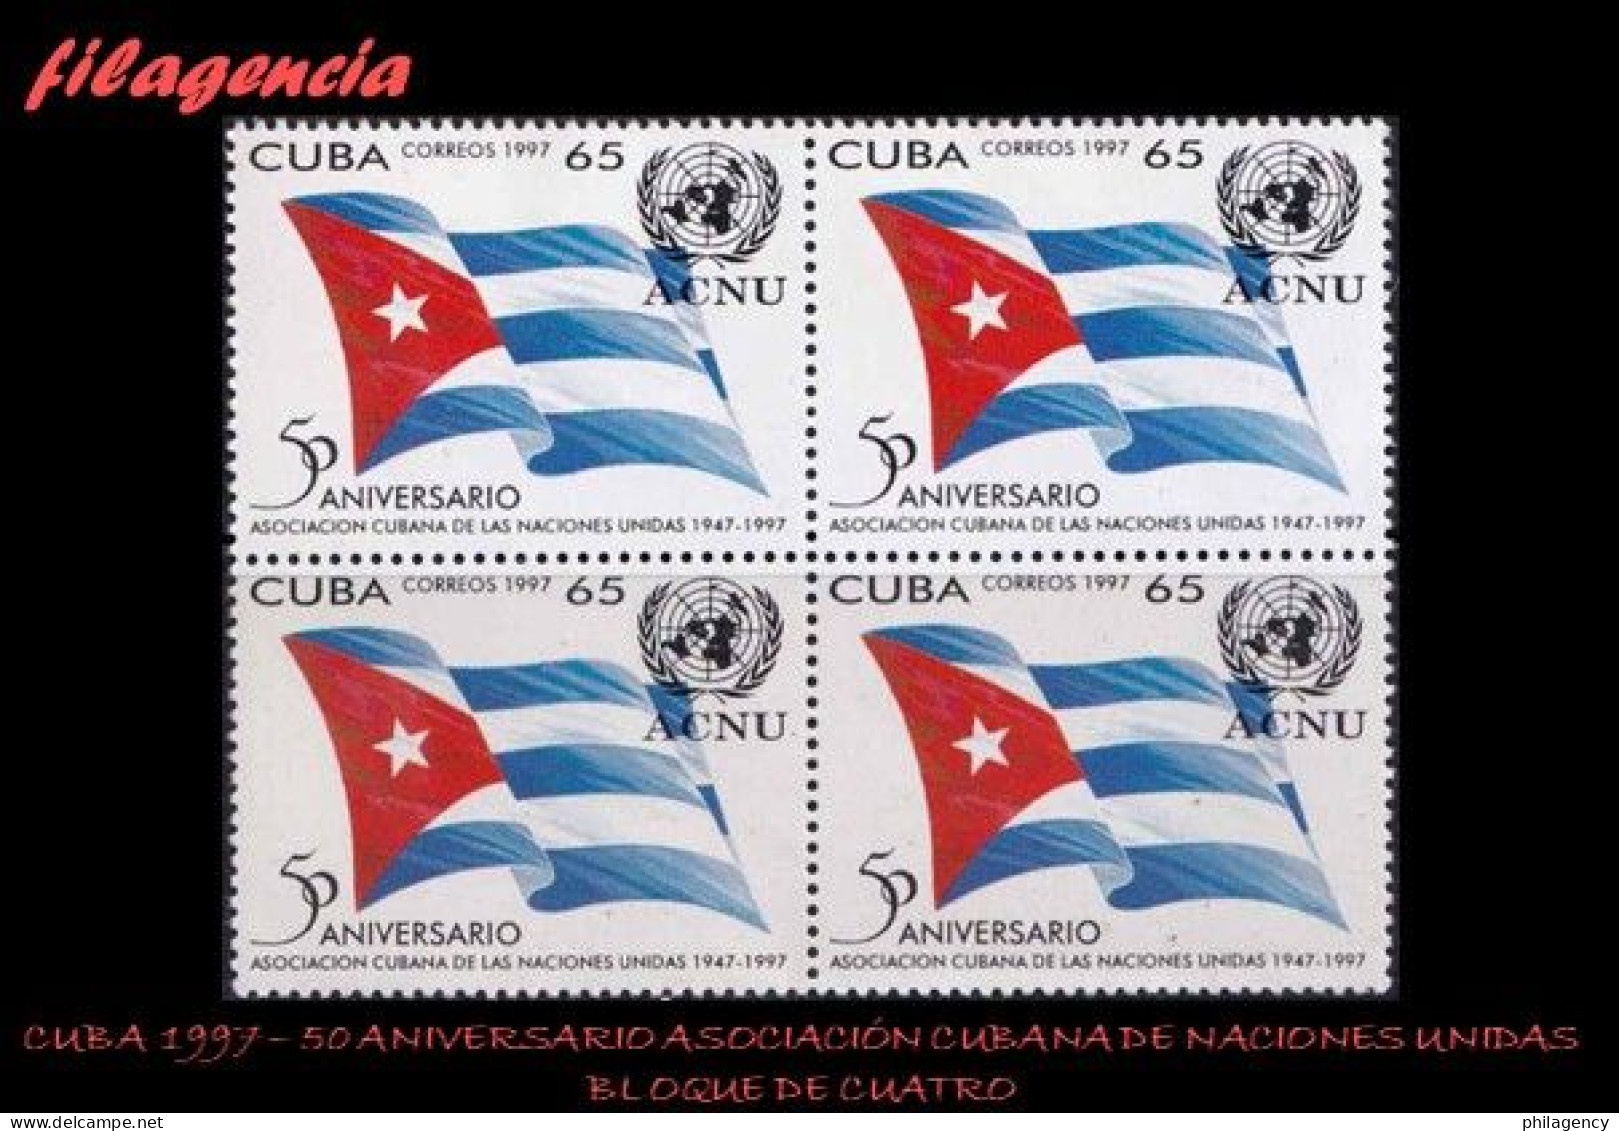 CUBA. BLOQUES DE CUATRO. 1997-13 CINCUENTENARIO DE LA ASOCIACIÓN CUBANA DE NACIONES UNIDAS - Unused Stamps